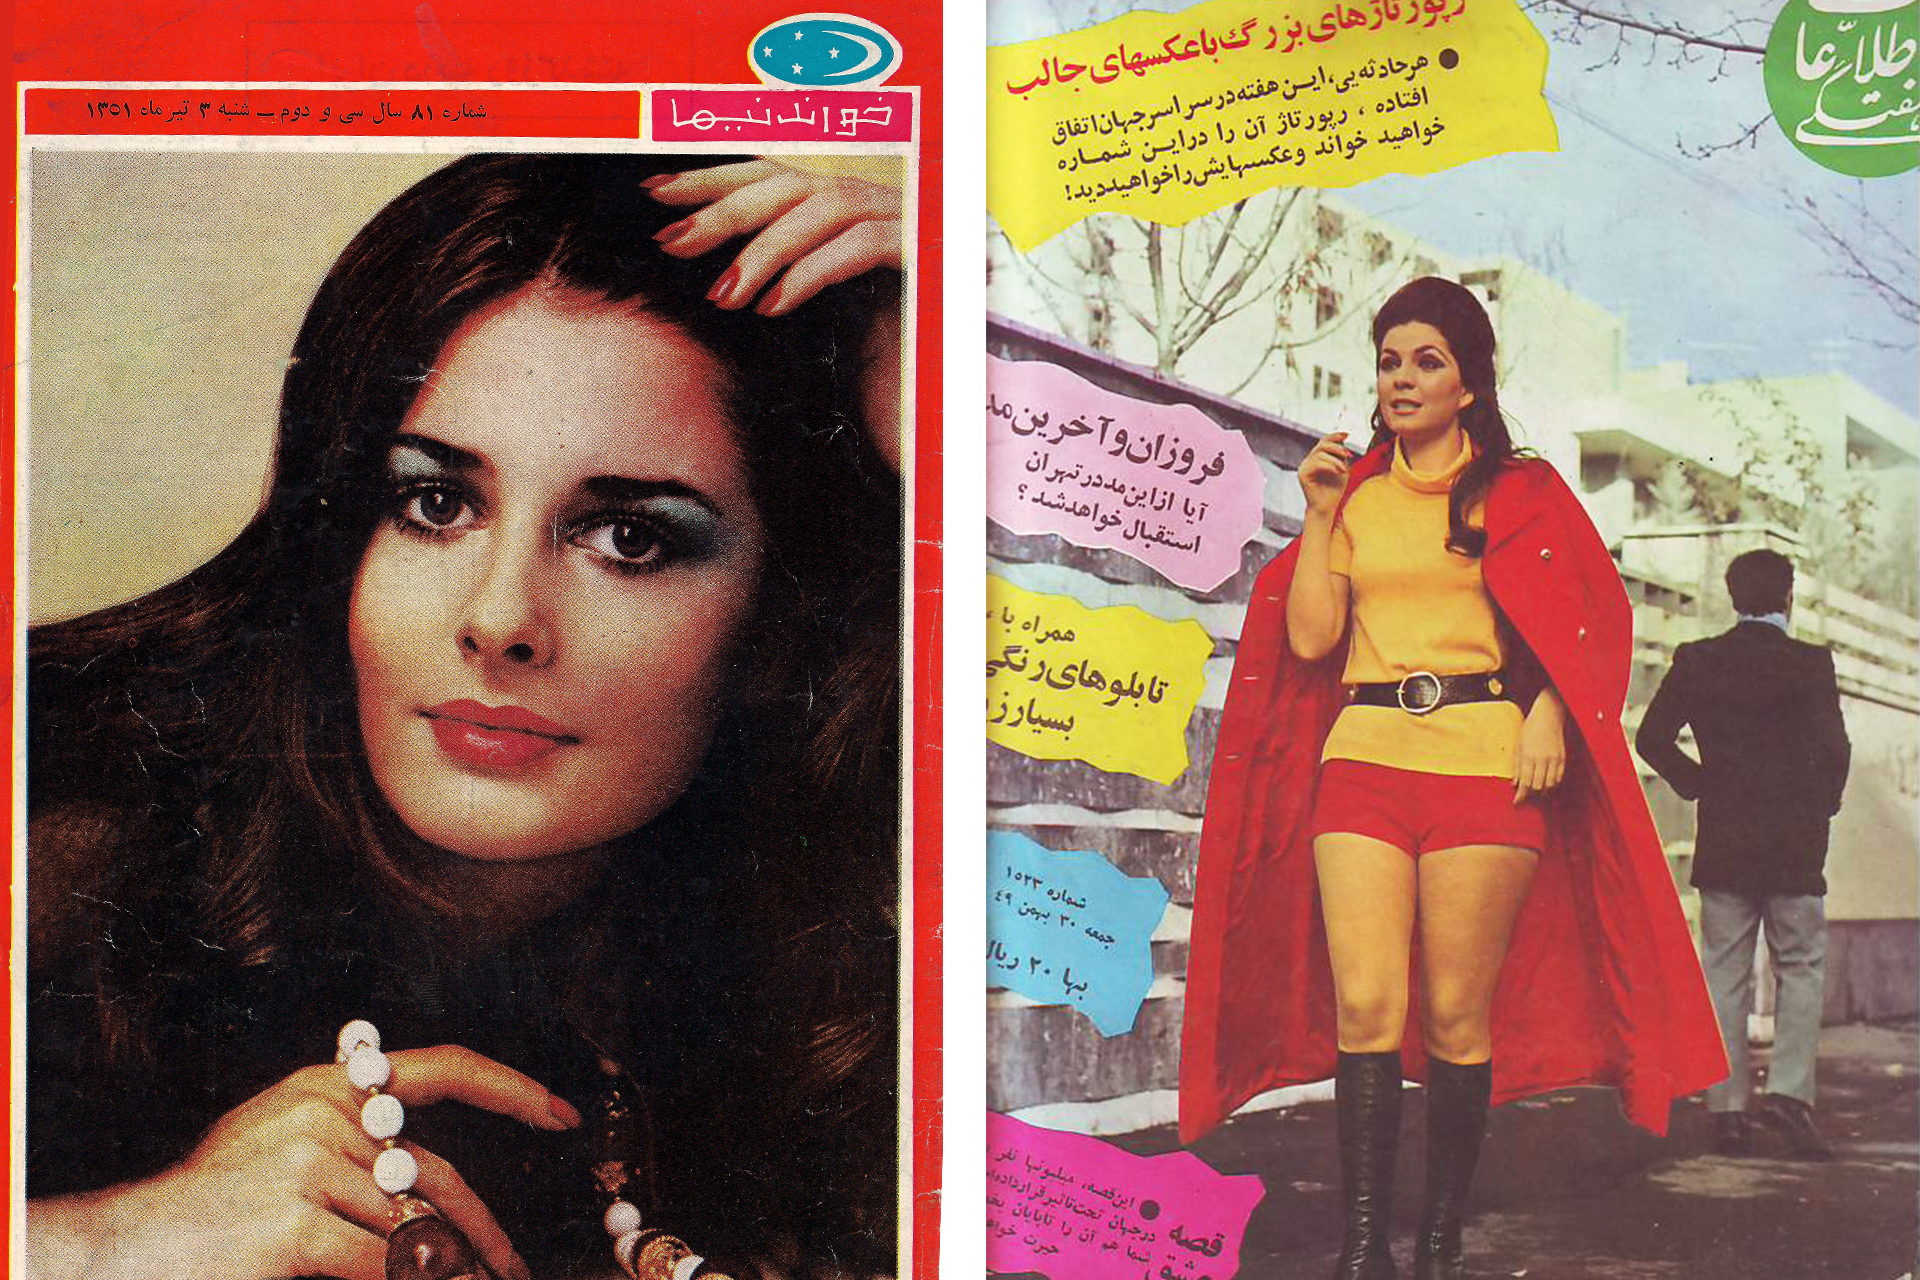 Слева: Обложка журнала «Ханданиха», 1972 год; справа: иранская модель, фотография из журнала, 1971 год